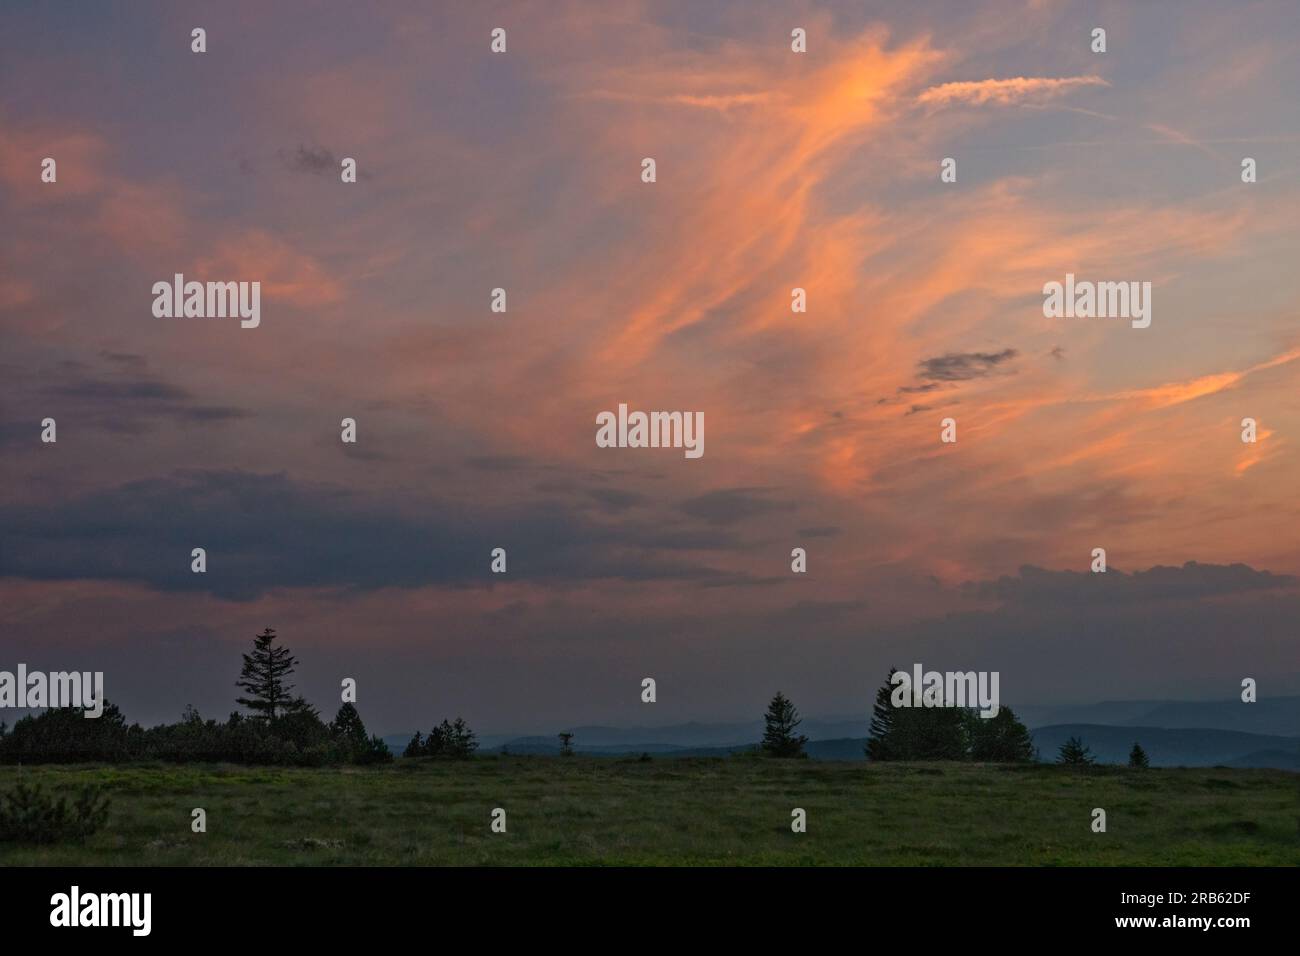 Nuvola di Cirro, arancione dall'ultima luce del sole che tramonta, sopra un paesaggio collinare nei Vosgi Foto Stock